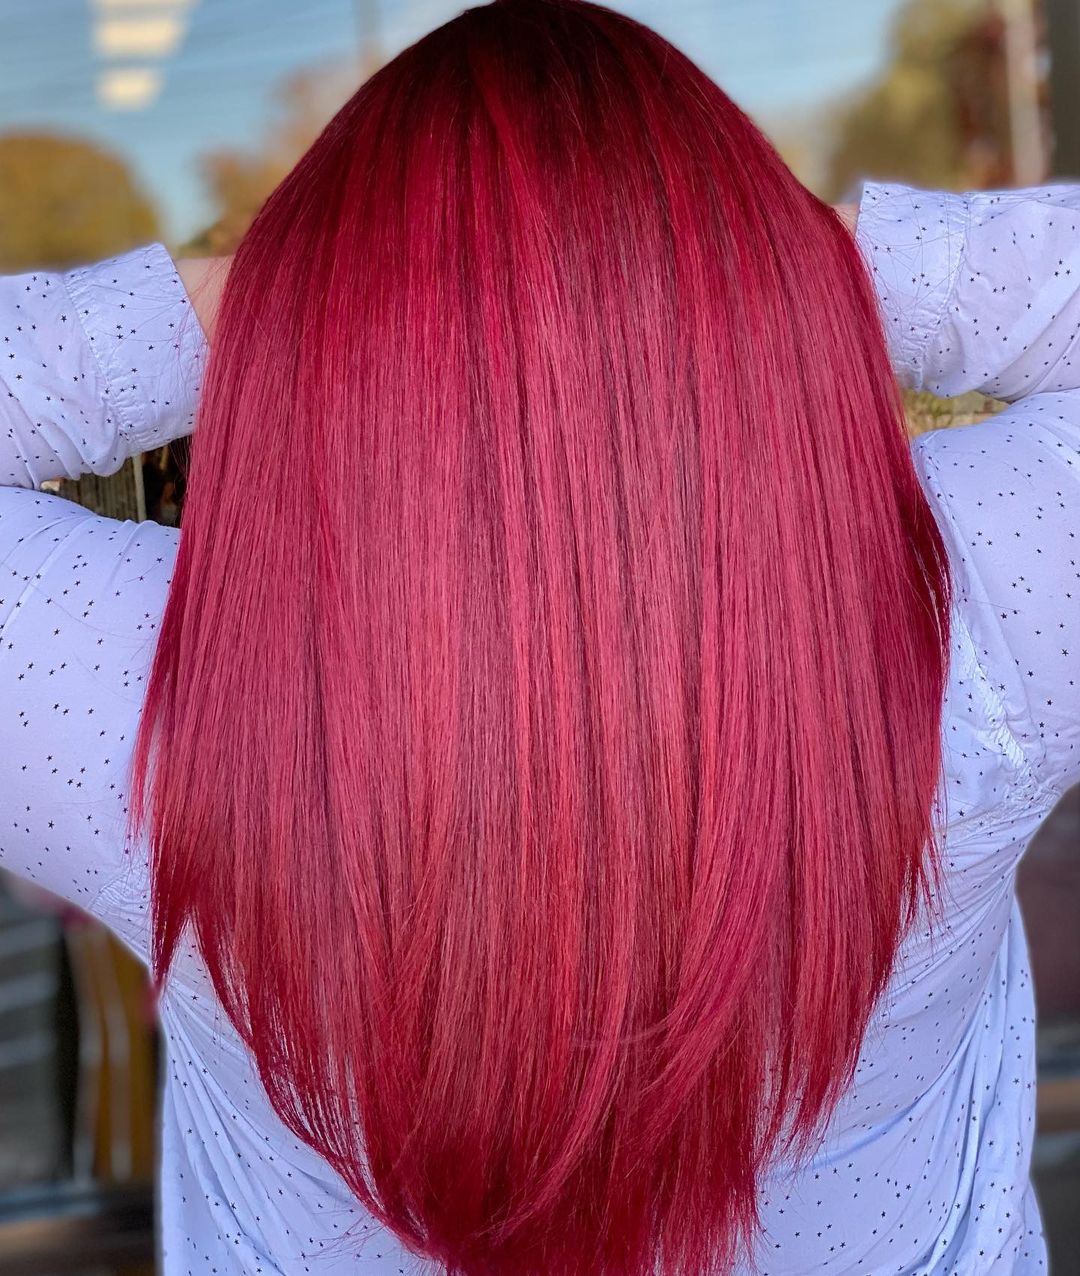 pelo rojo cereza rubí